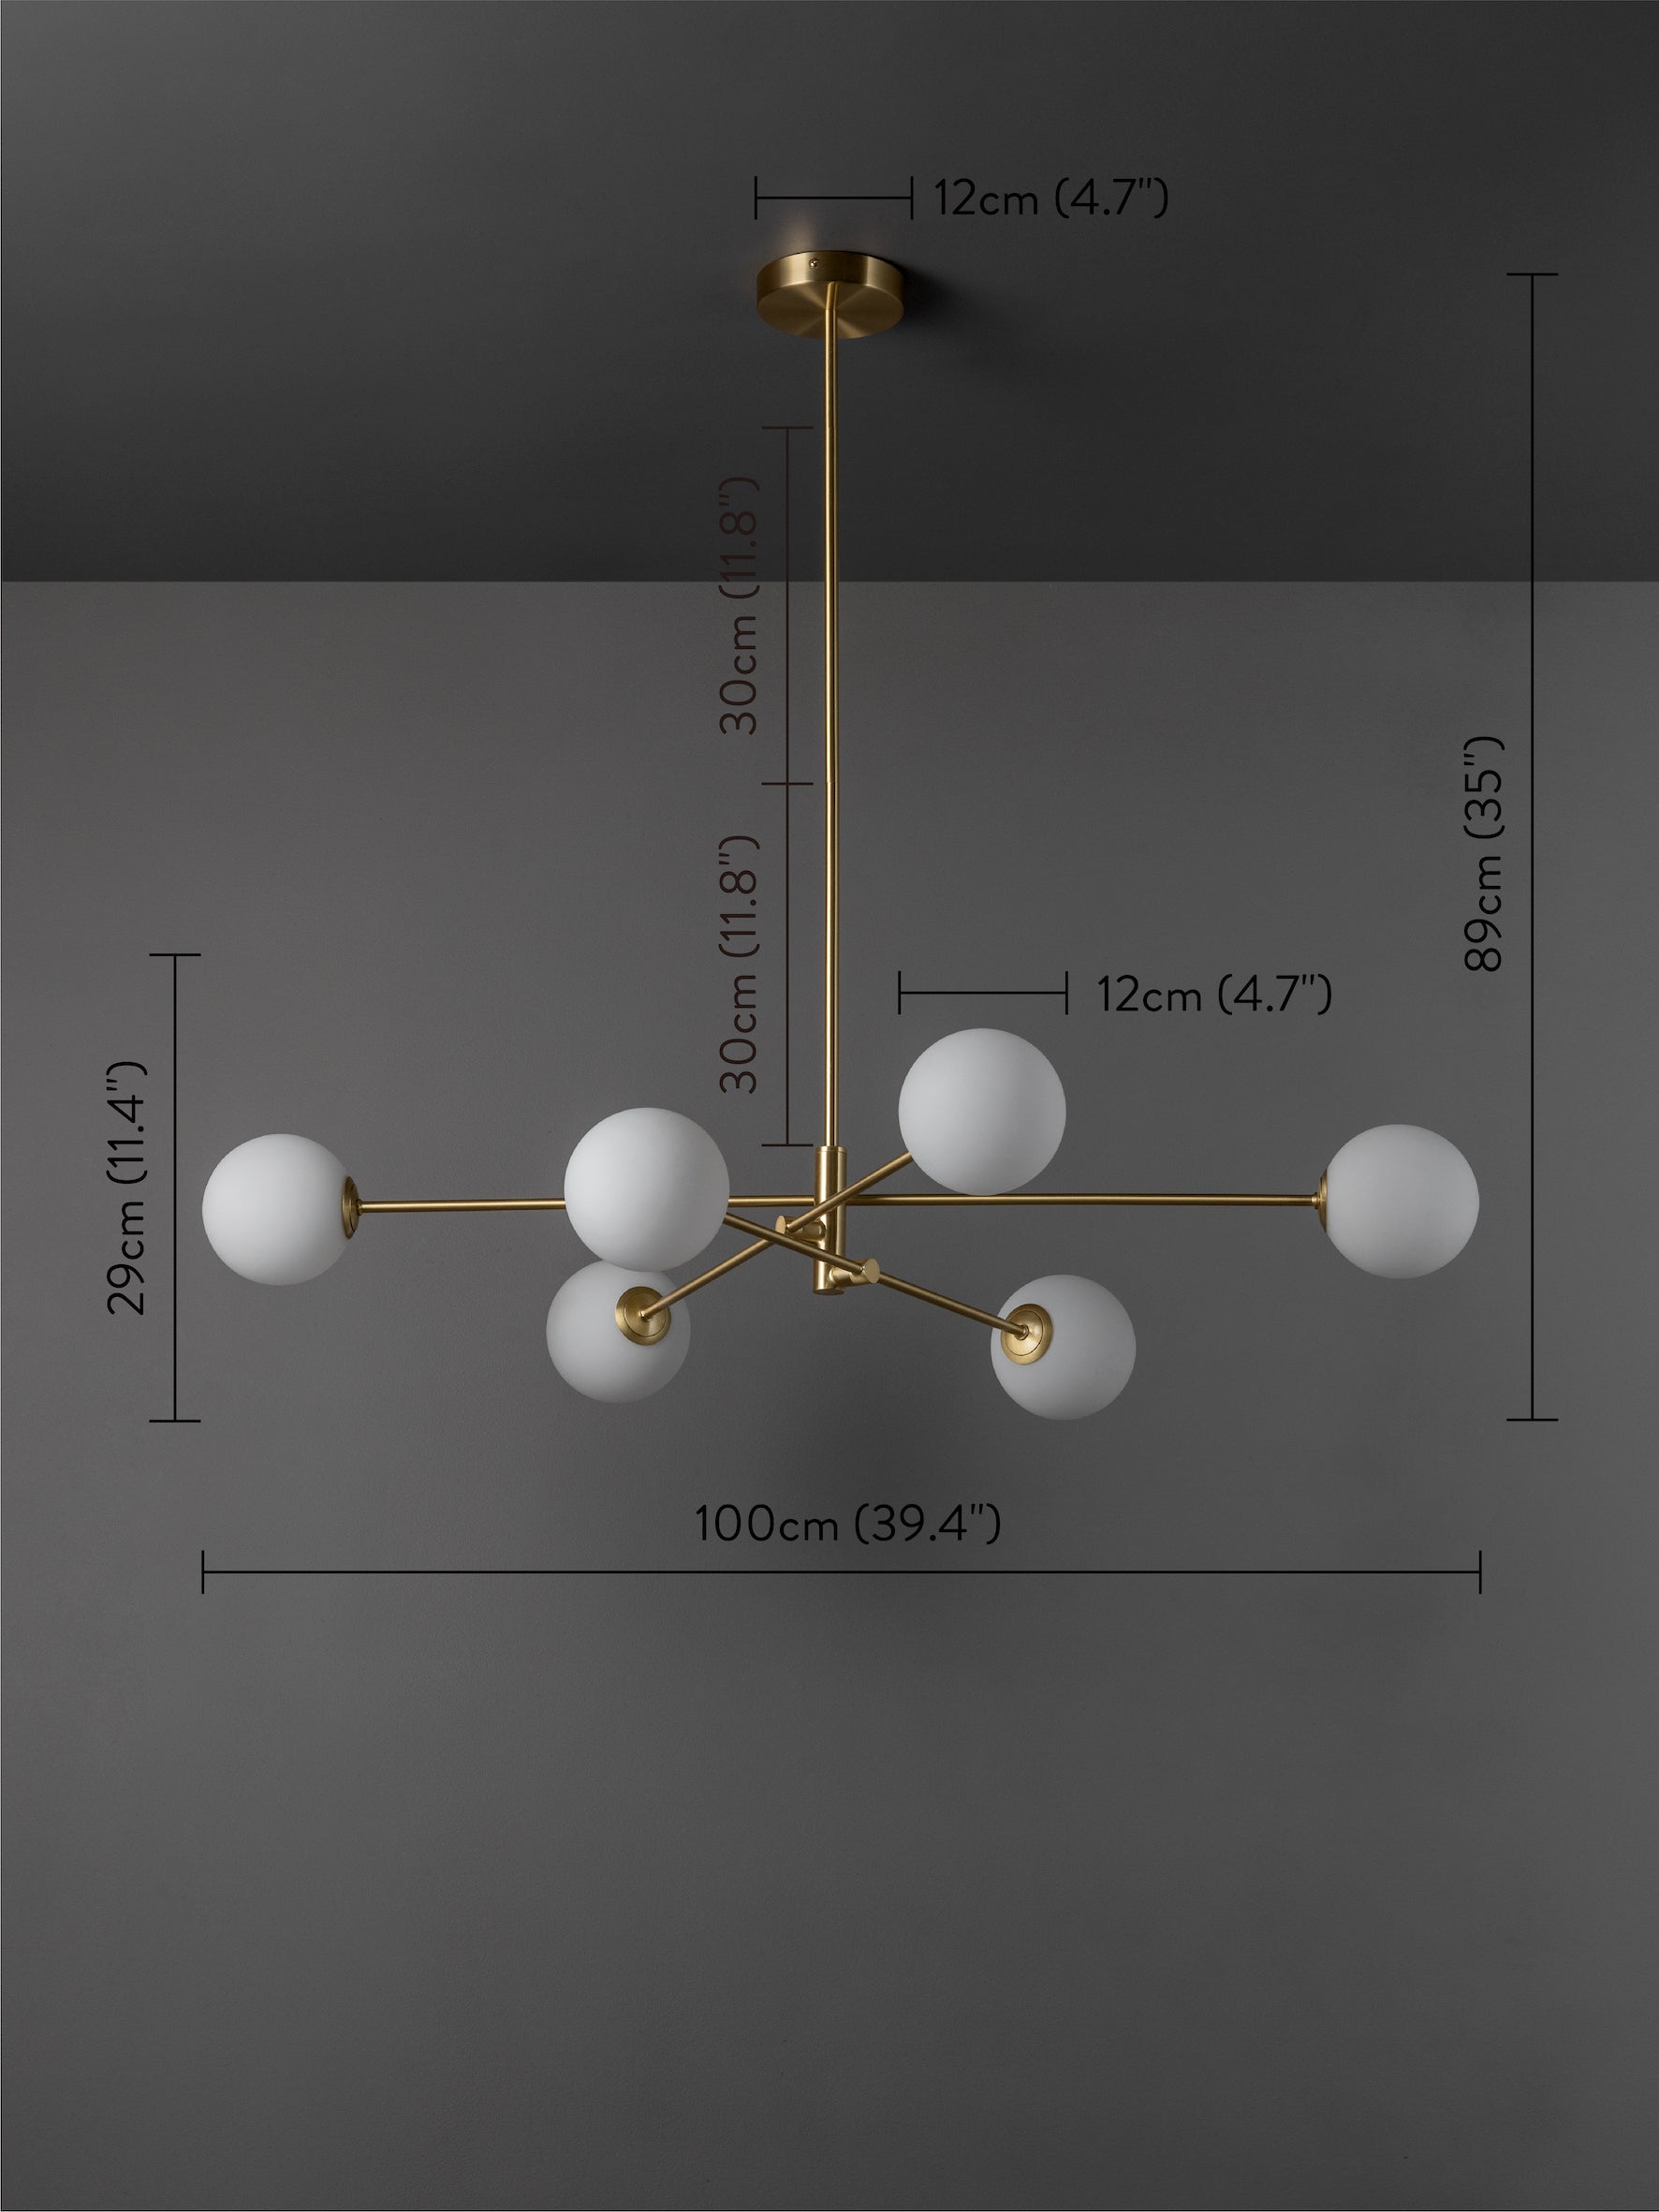 Chelso - 6 light brass and opal pendant | Ceiling Light | Lights & Lamps | UK | Modern Affordable Designer Lighting